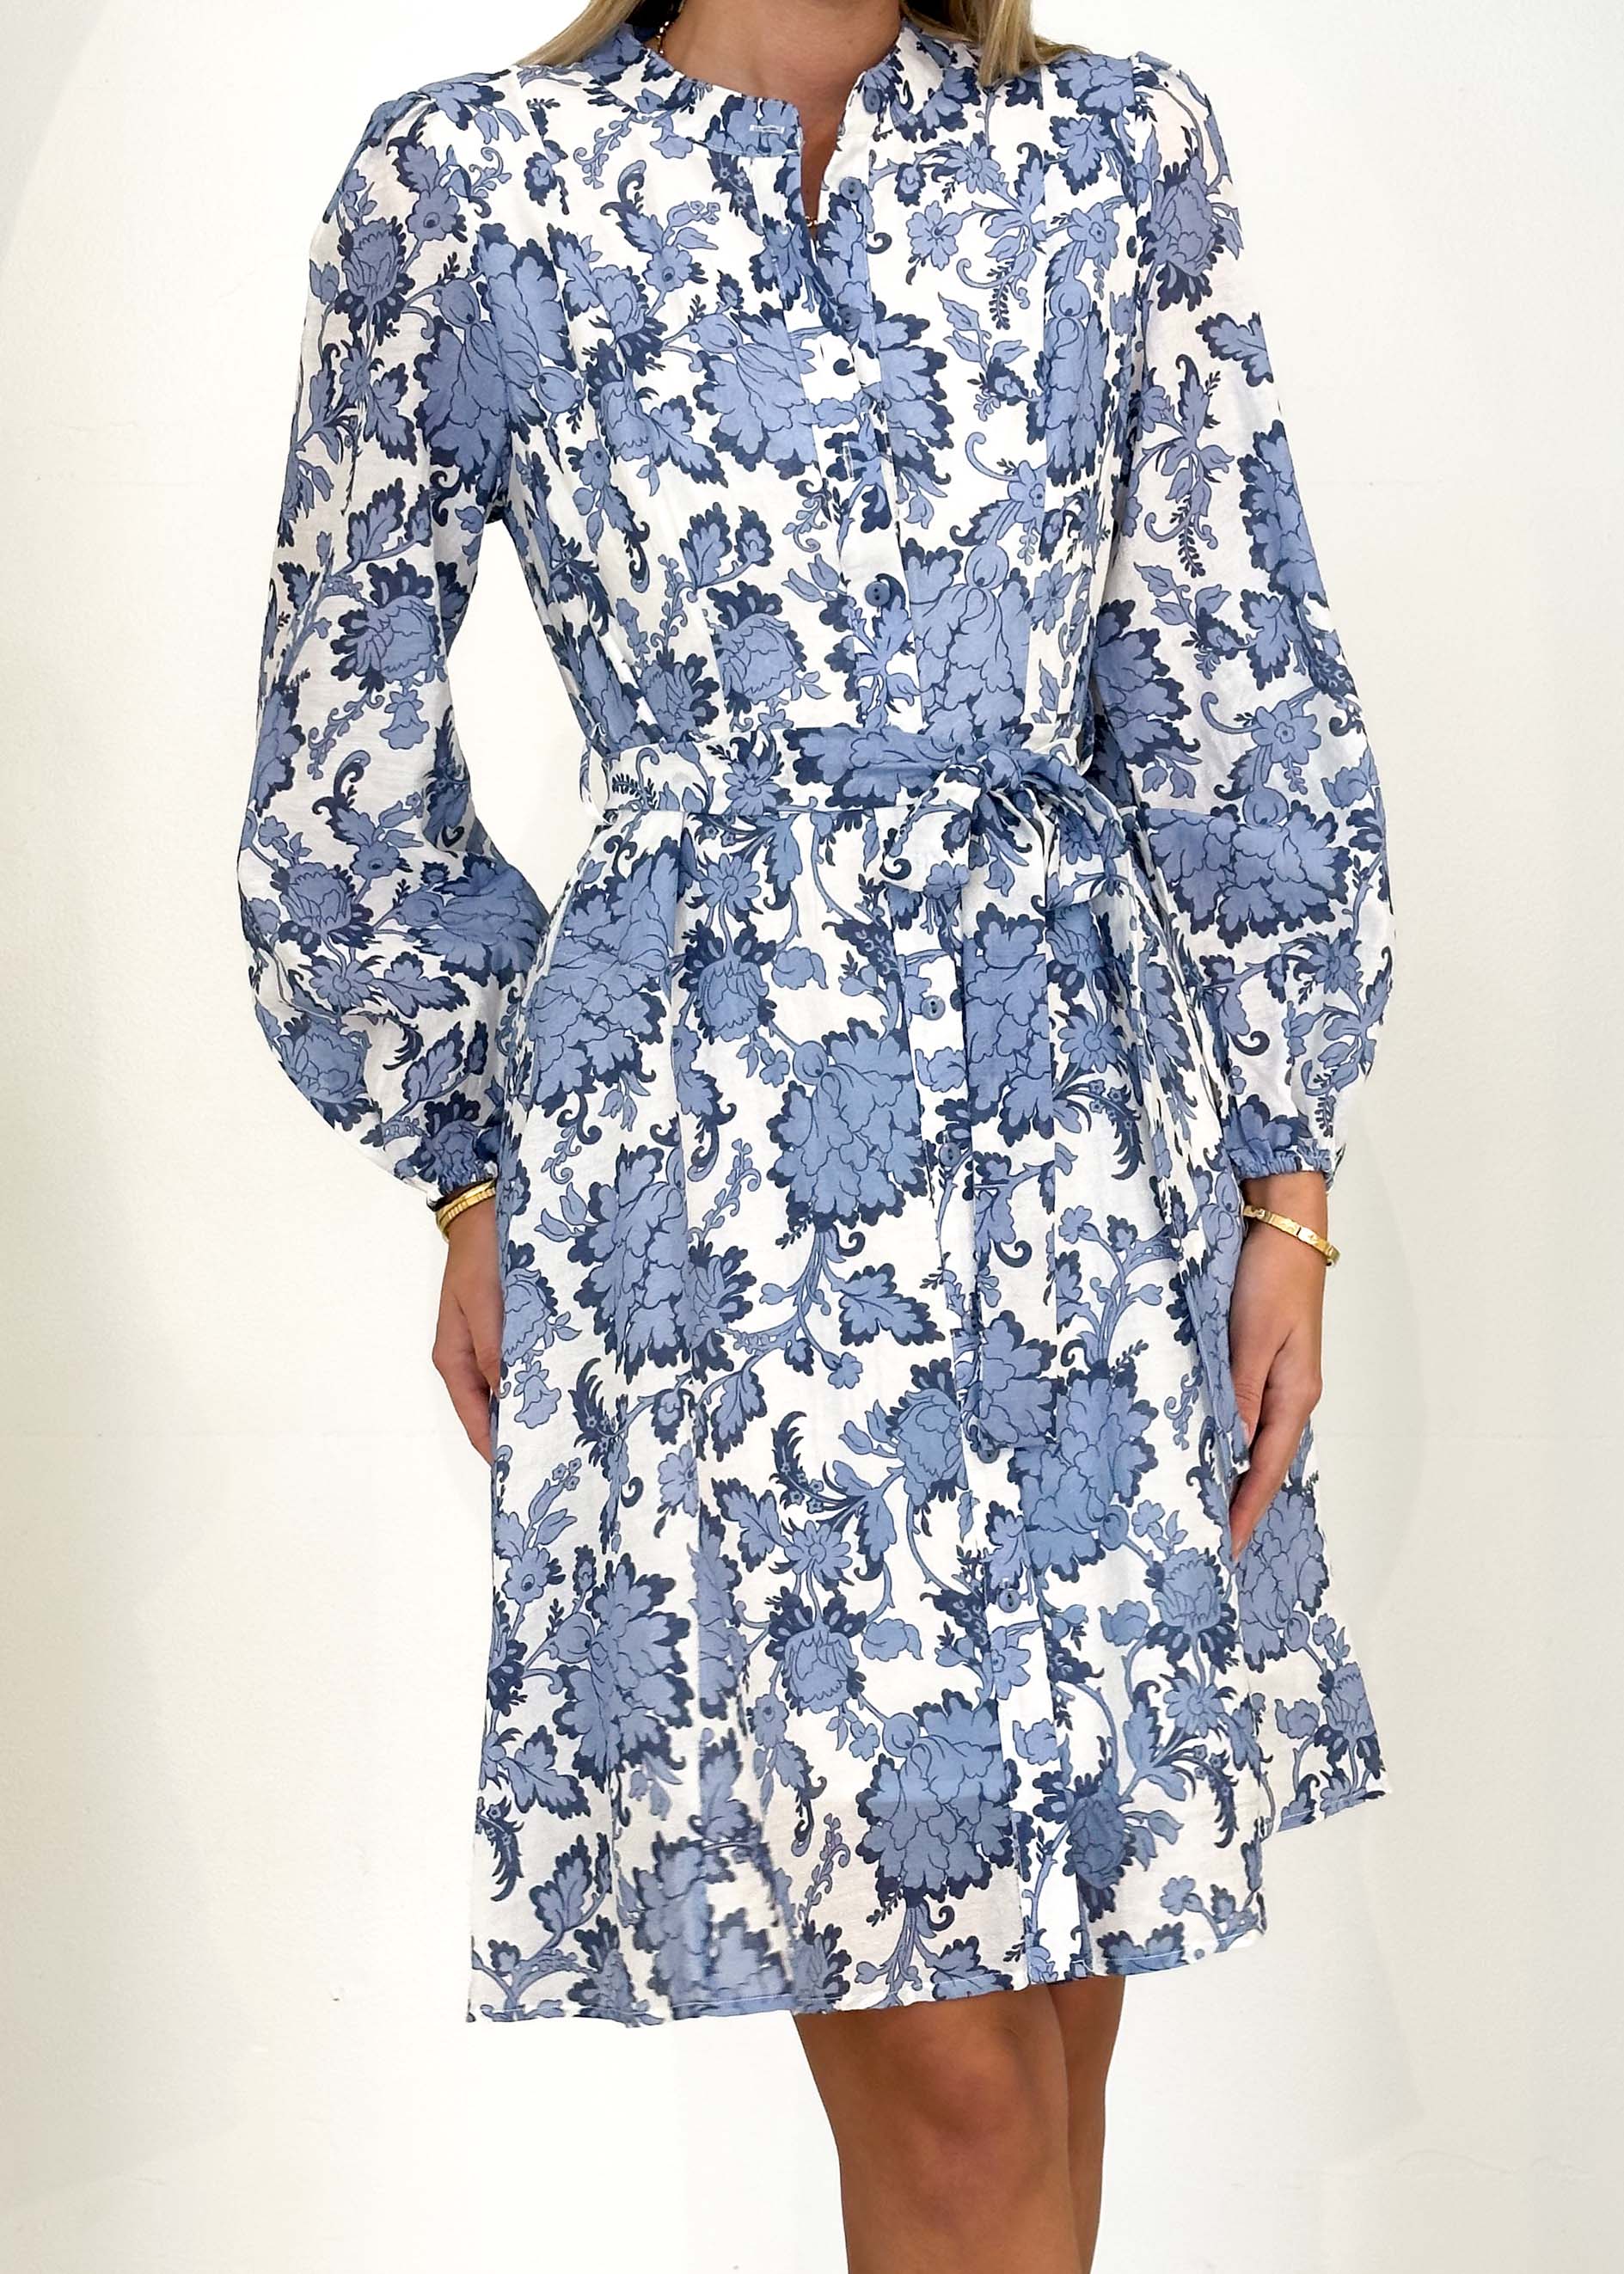 Dessair Dress - Blue Floral